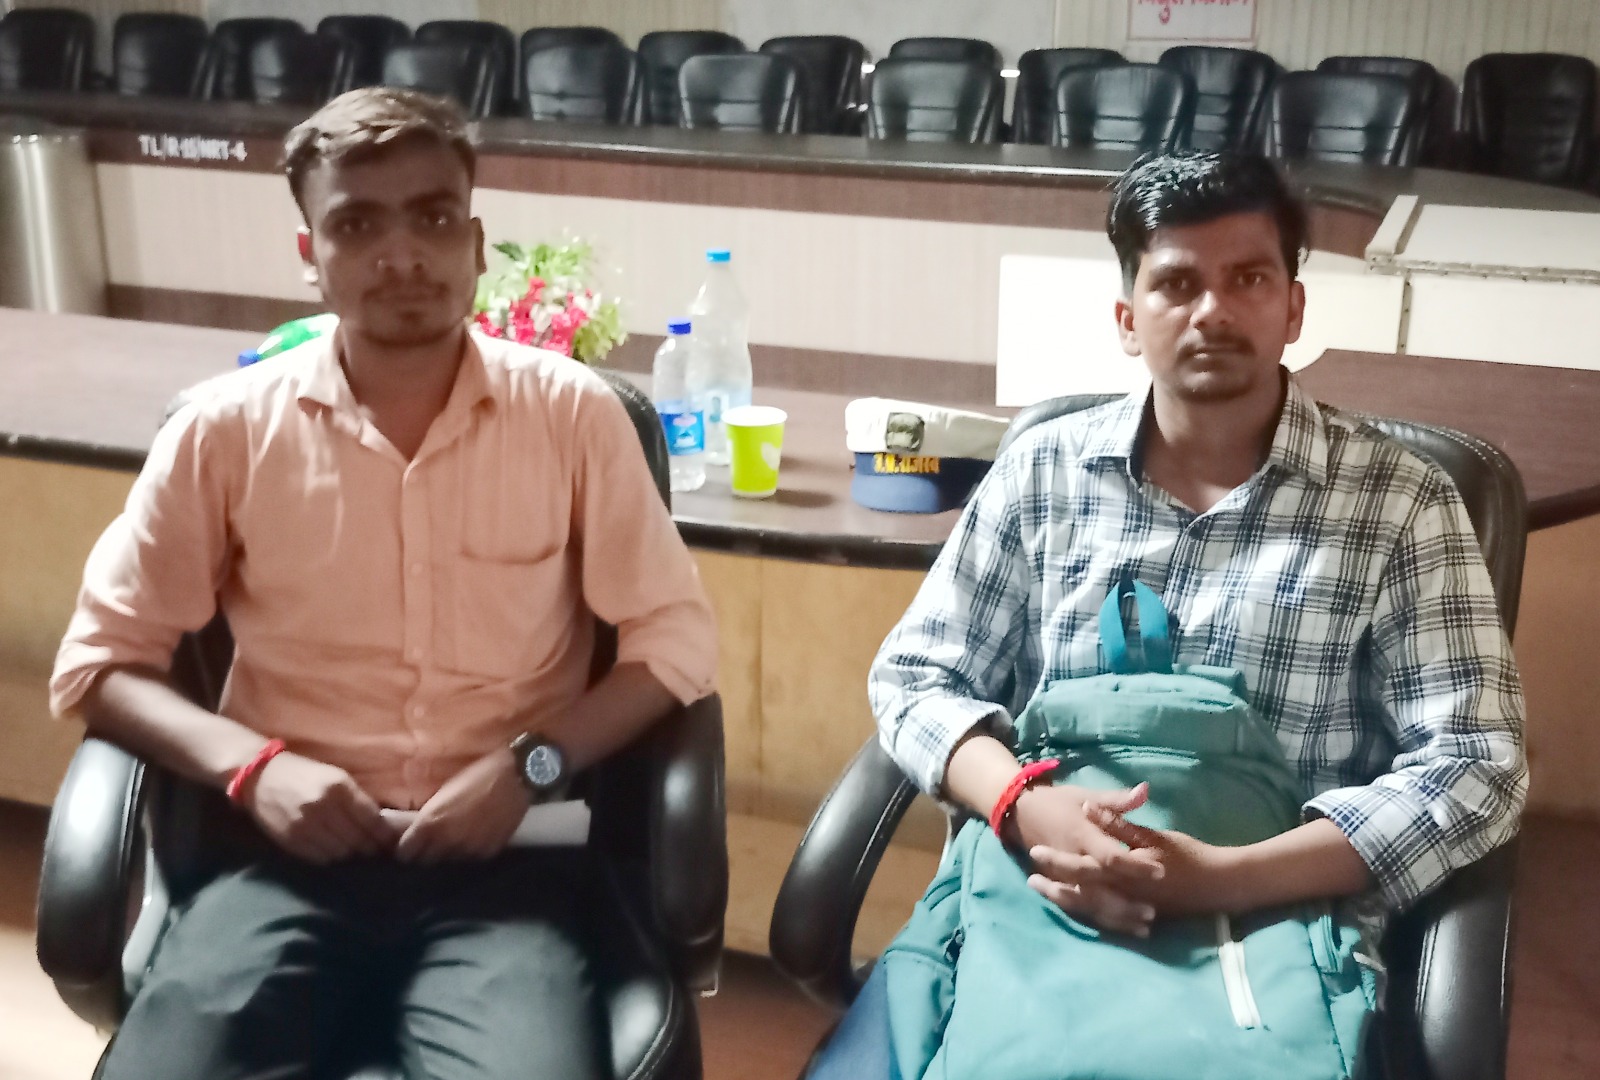 लखीमपुर-खीरी: तहसील में फर्जी नियुक्ति पत्र पर ज्वाइन करने आए दो युवक गिरफ्तार